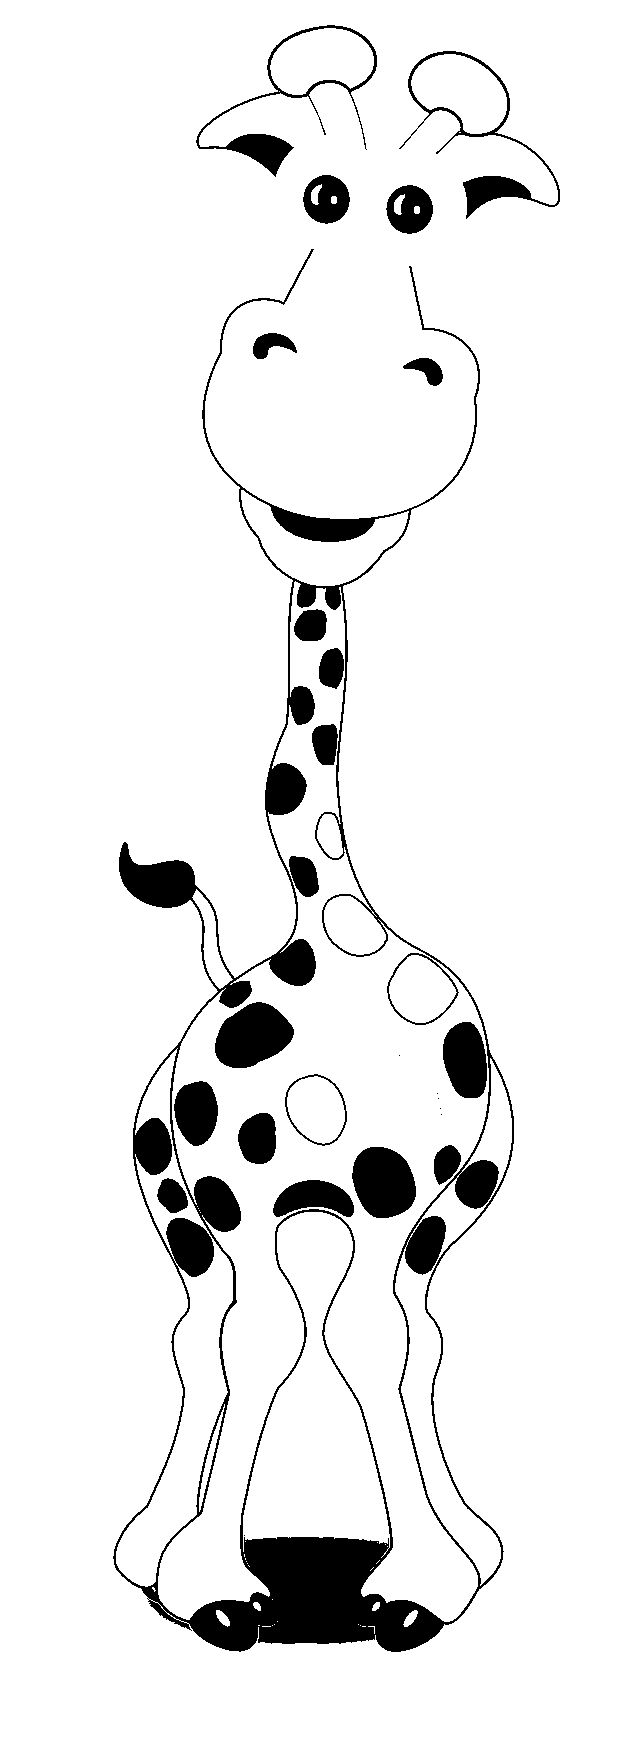 Disegno da colorare di giraffa stile fumetto umoristico